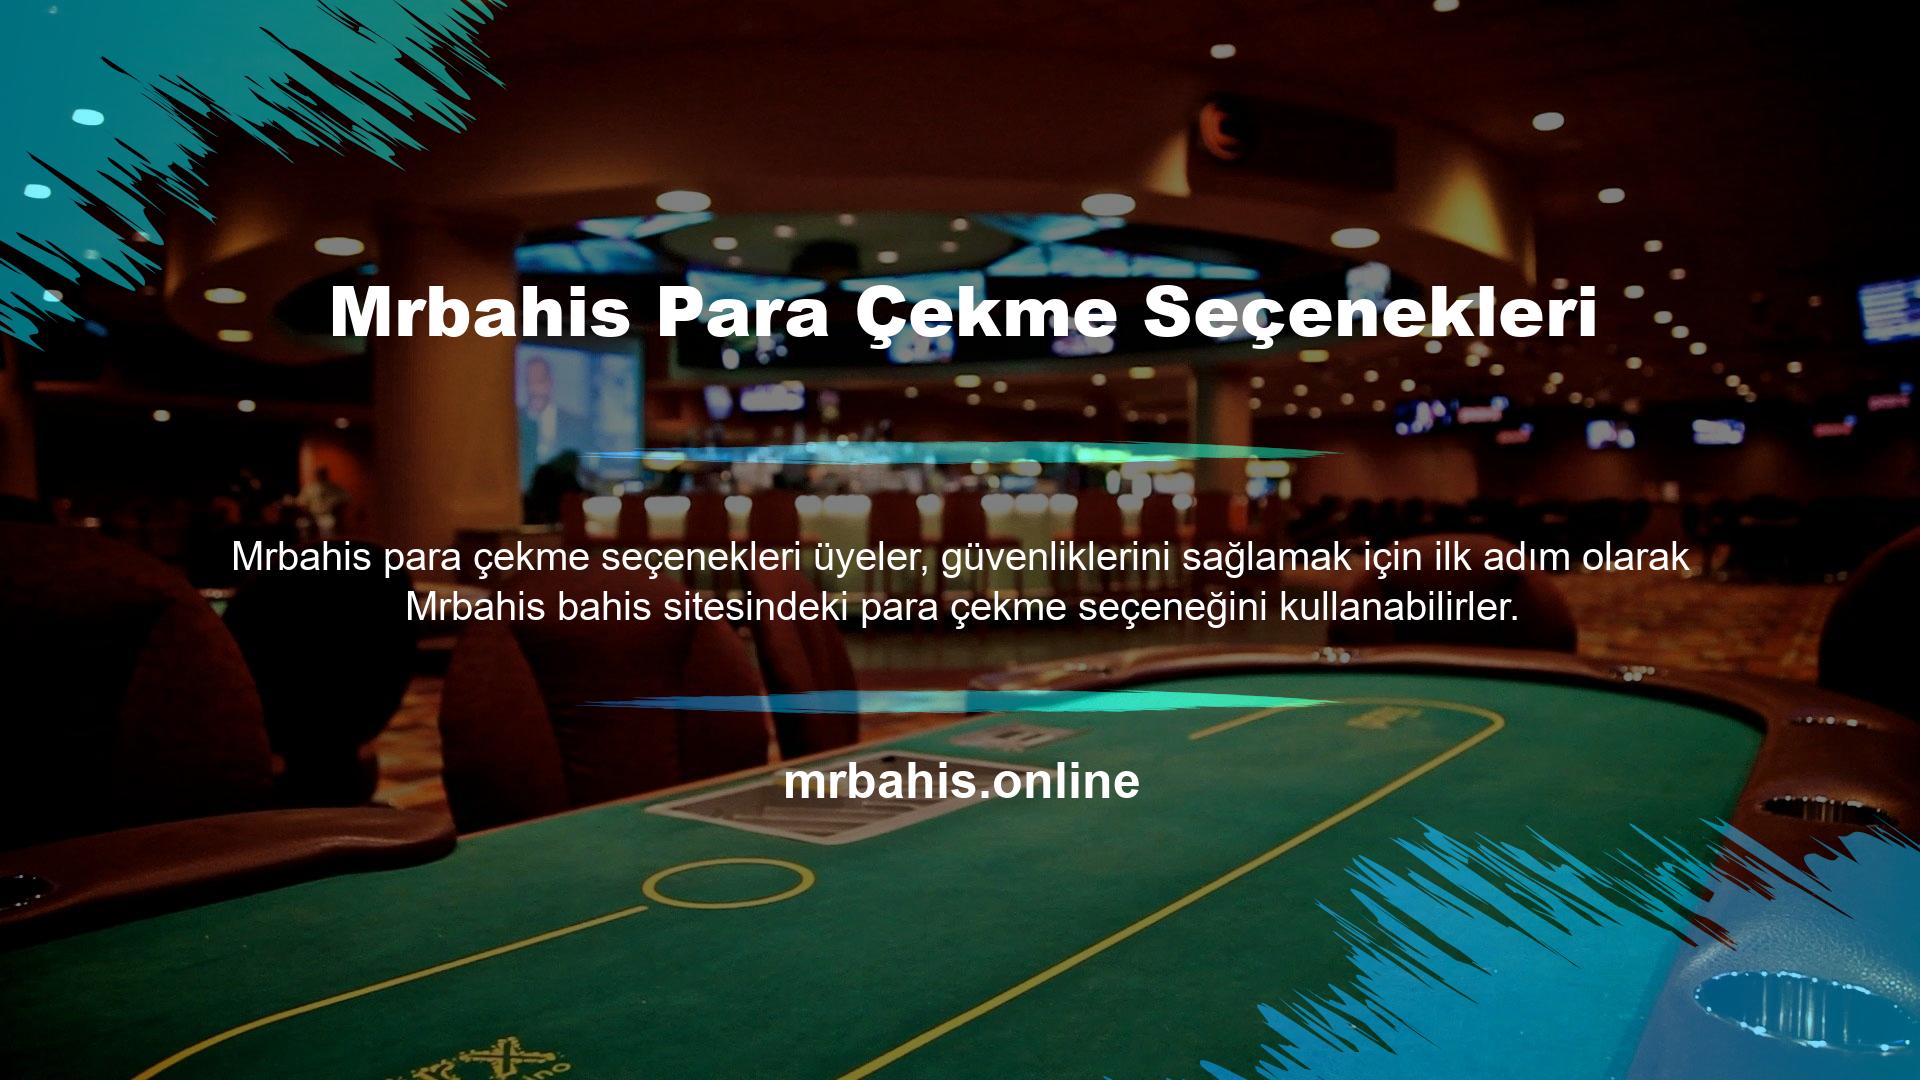 Teknolojinin ilerlemesi sayesinde online casino siteleriyle tanıştık